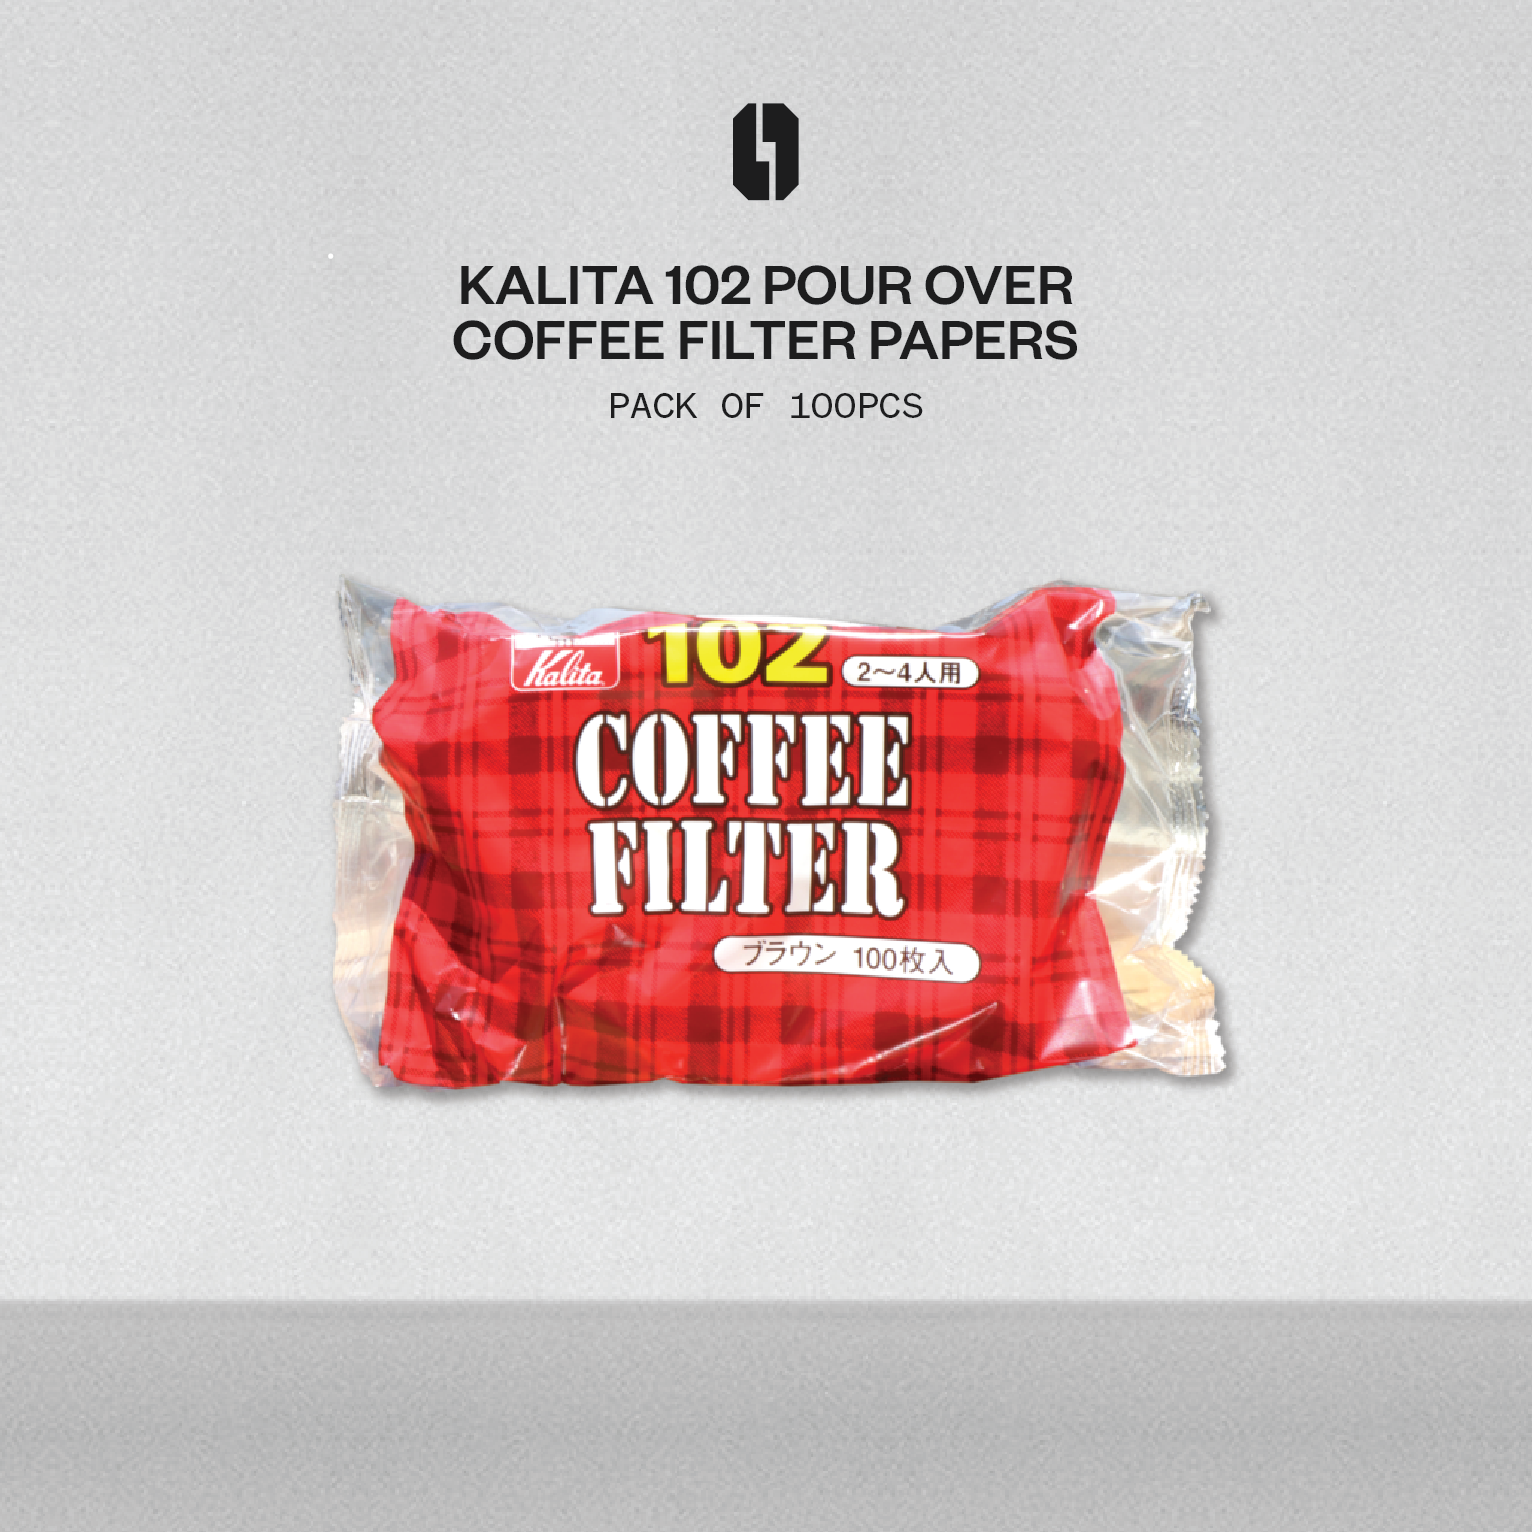 Kalita Coffee Filter